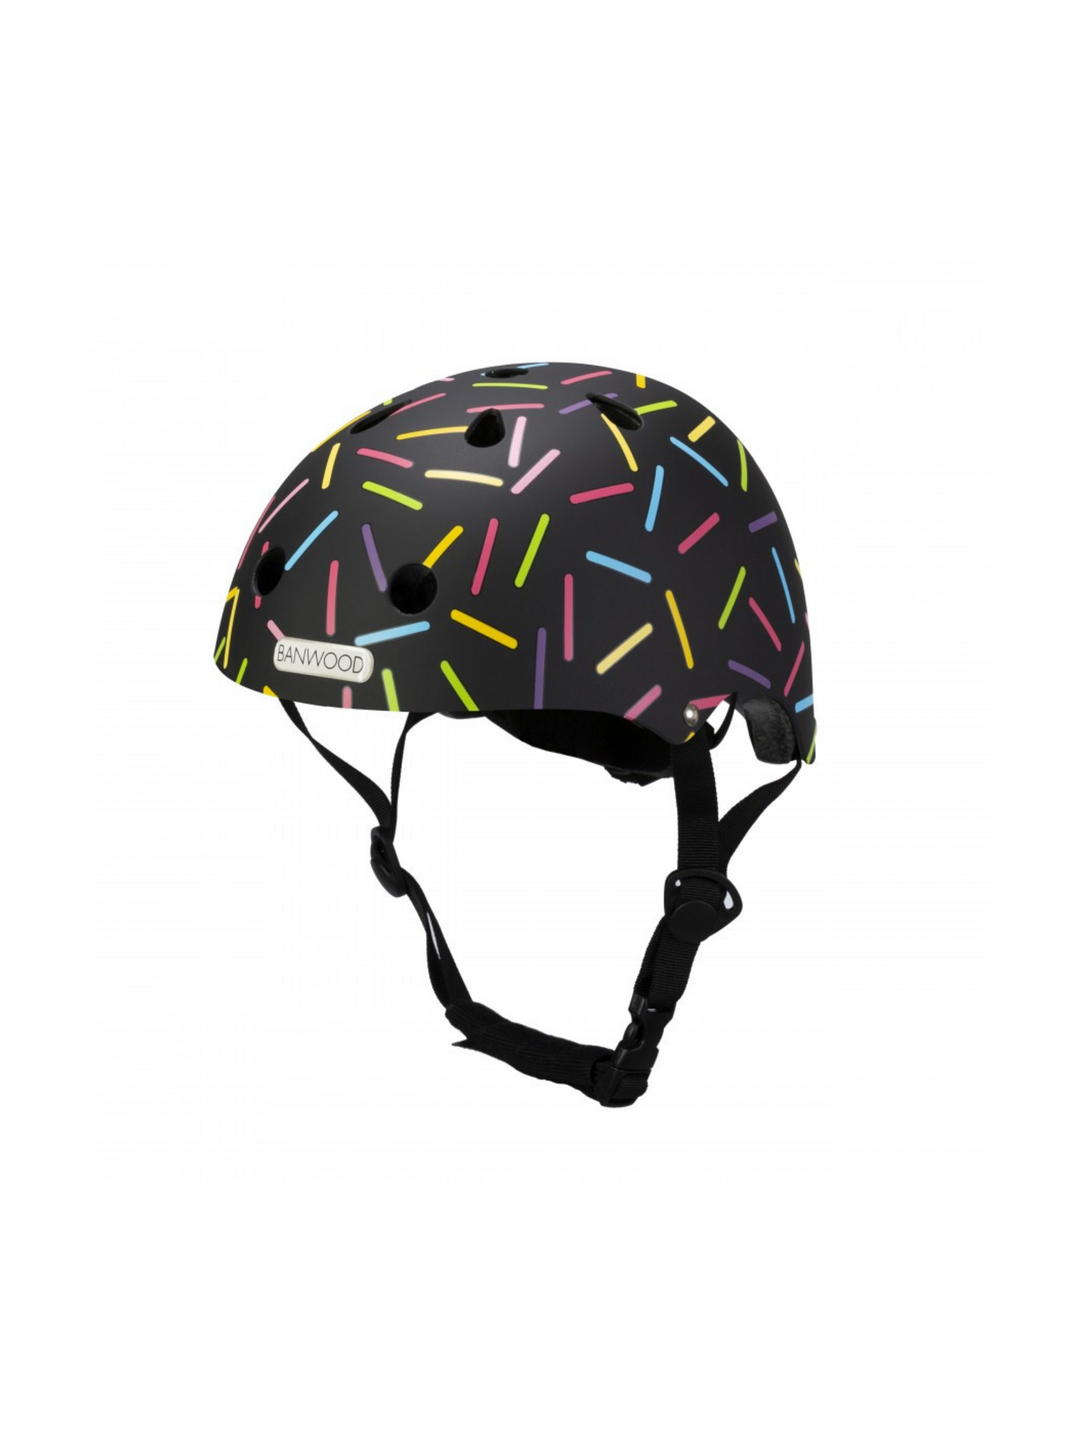 Banwood x Marest Helmet - Allegra Black